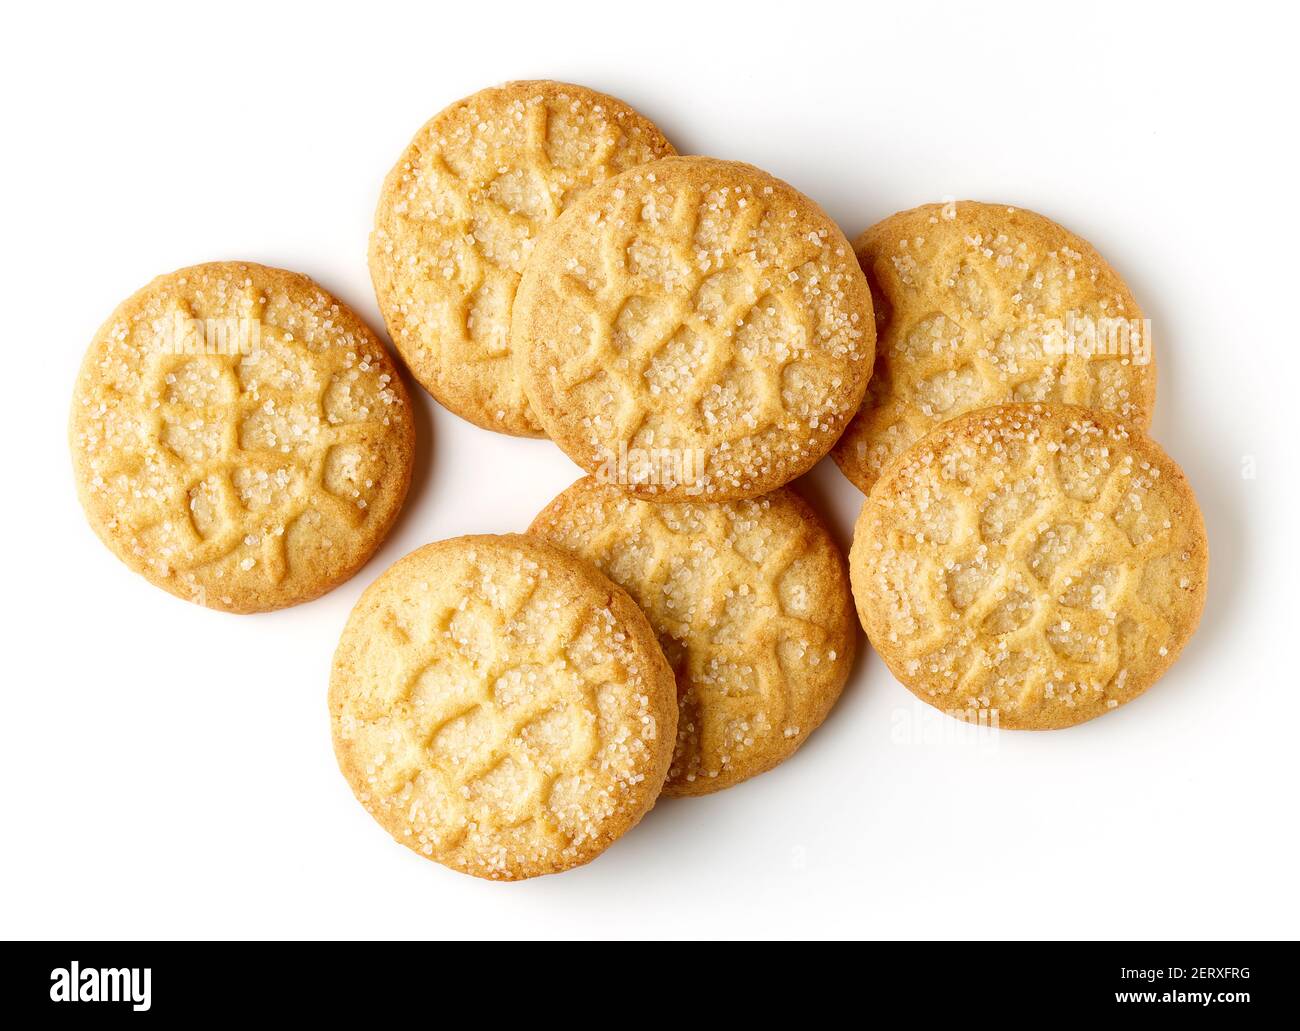 Tas de biscuits au beurre danois isolés sur fond blanc, vue de dessus Banque D'Images